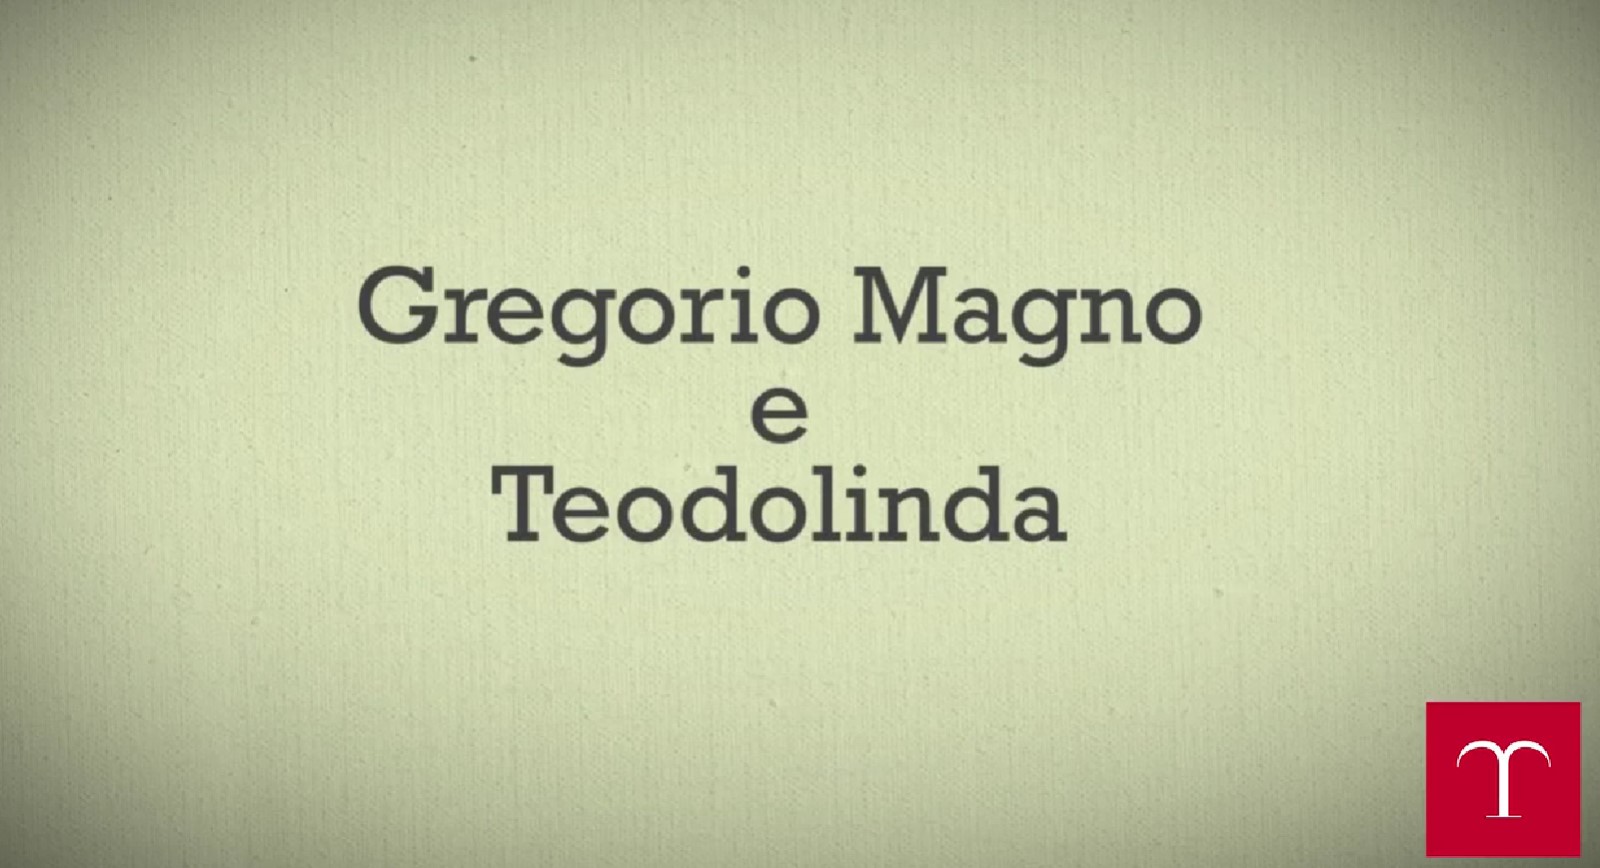 Gregorio Magno e Teodolinda